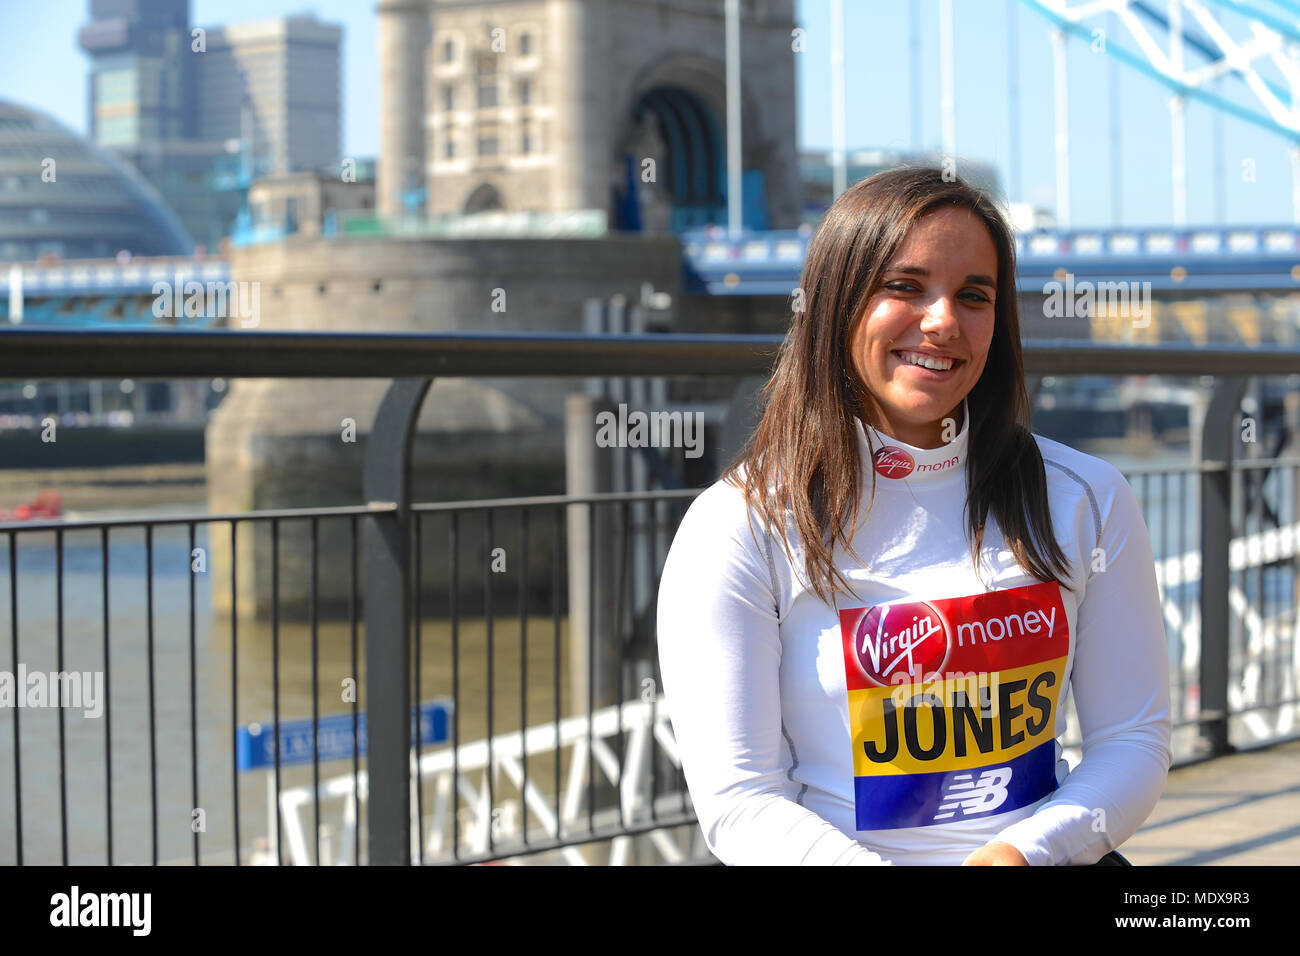 Jade Jones (GBR) à un marathon de Londres Virgin Money photocall avant course de l'élite des athlètes handicapés, Tower Hotel, Londres, Royaume-Uni. Jade Jones a fait ses débuts au marathon Marathon de Londres en 2014 à 18 ans après avoir remporté le Mini Marathon de Londres trois fois de suite de 2011 à 2013, deux fois briser le sous 17s record du parcours des filles. Elle n'a pas réussi à finir le marathon dans les 2015 et 2016 mais a fait une énorme amélioration pour placer cinquième l'année dernière en 1:51:46. Le marathon, qui aura lieu le dimanche 22 avril est partie du monde Marathon Majors et aussi le monde Para athlétisme Marathon World Cu Banque D'Images